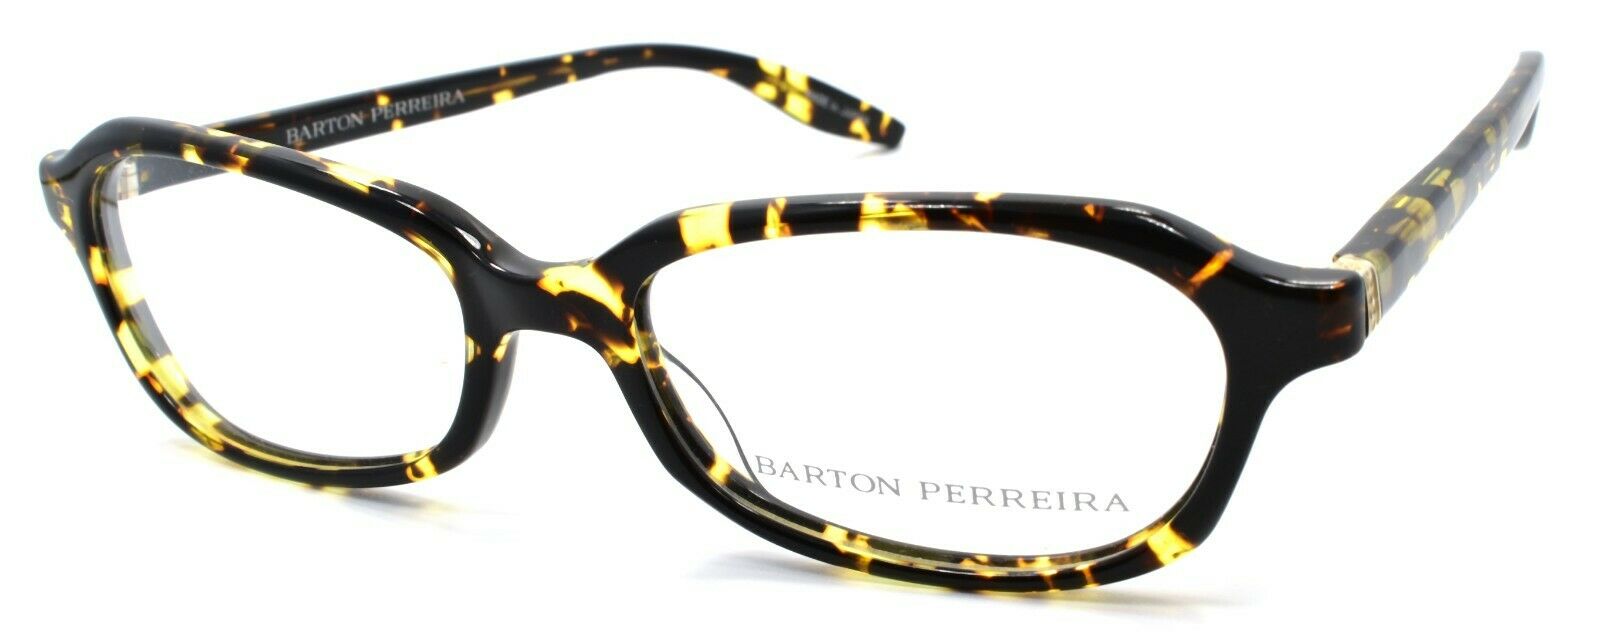 1-Barton Perreira Raynette HEC/BOL Women's Glasses Frames 51-17-135 Heroine Chic-672263039181-IKSpecs